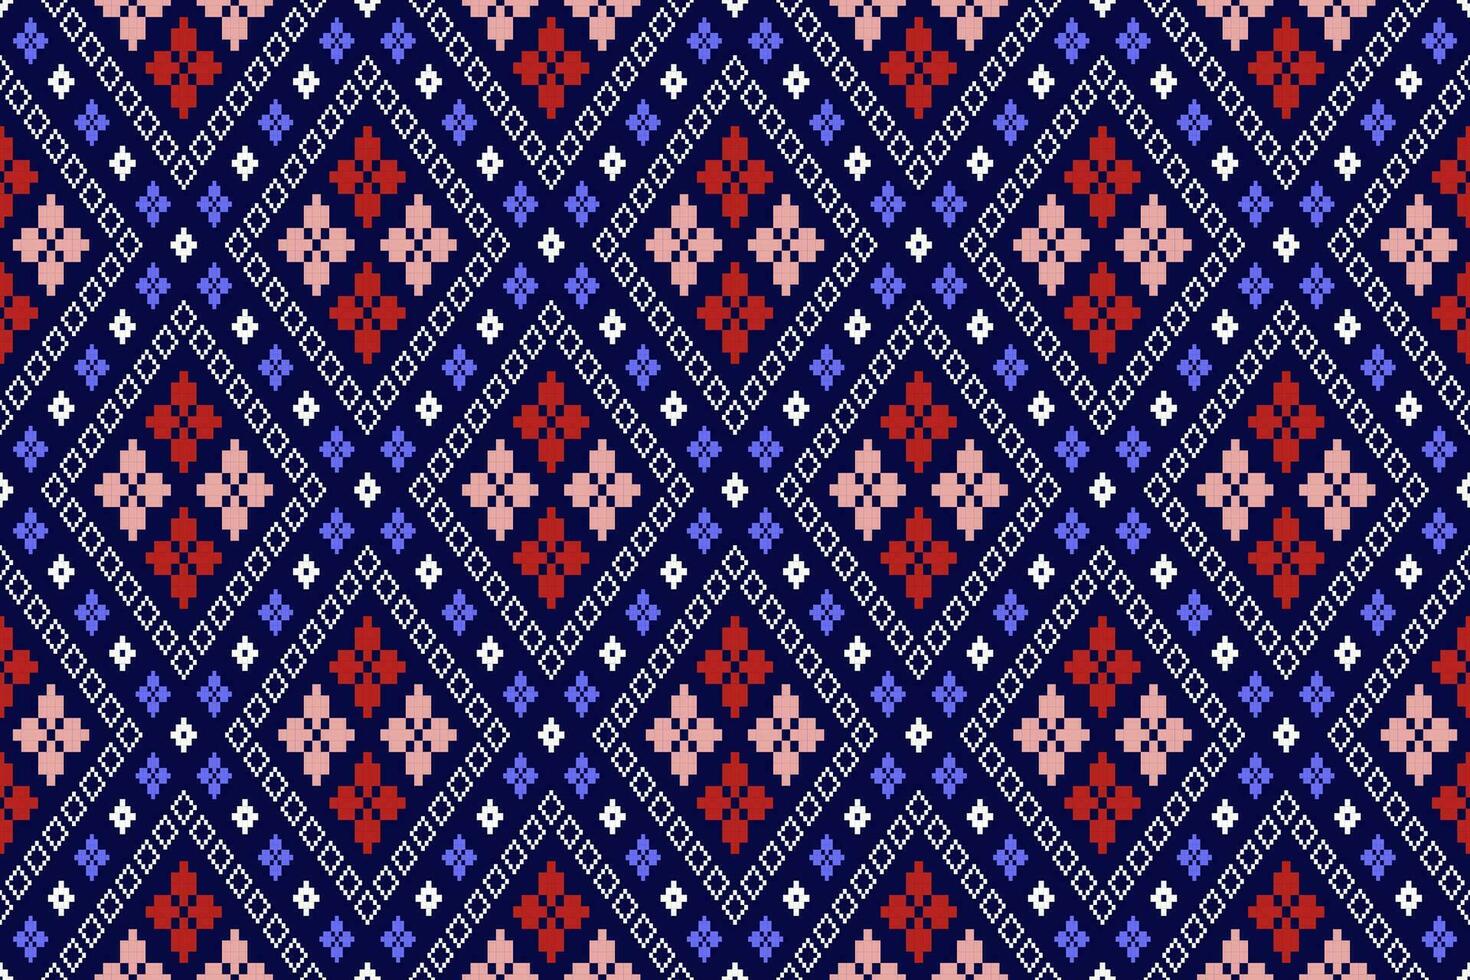 indaco Marina Militare blu geometrico tradizionale etnico modello ikat senza soluzione di continuità modello confine astratto design per tessuto Stampa stoffa vestito tappeto le tende e sarong azteco africano indiano indonesiano vettore